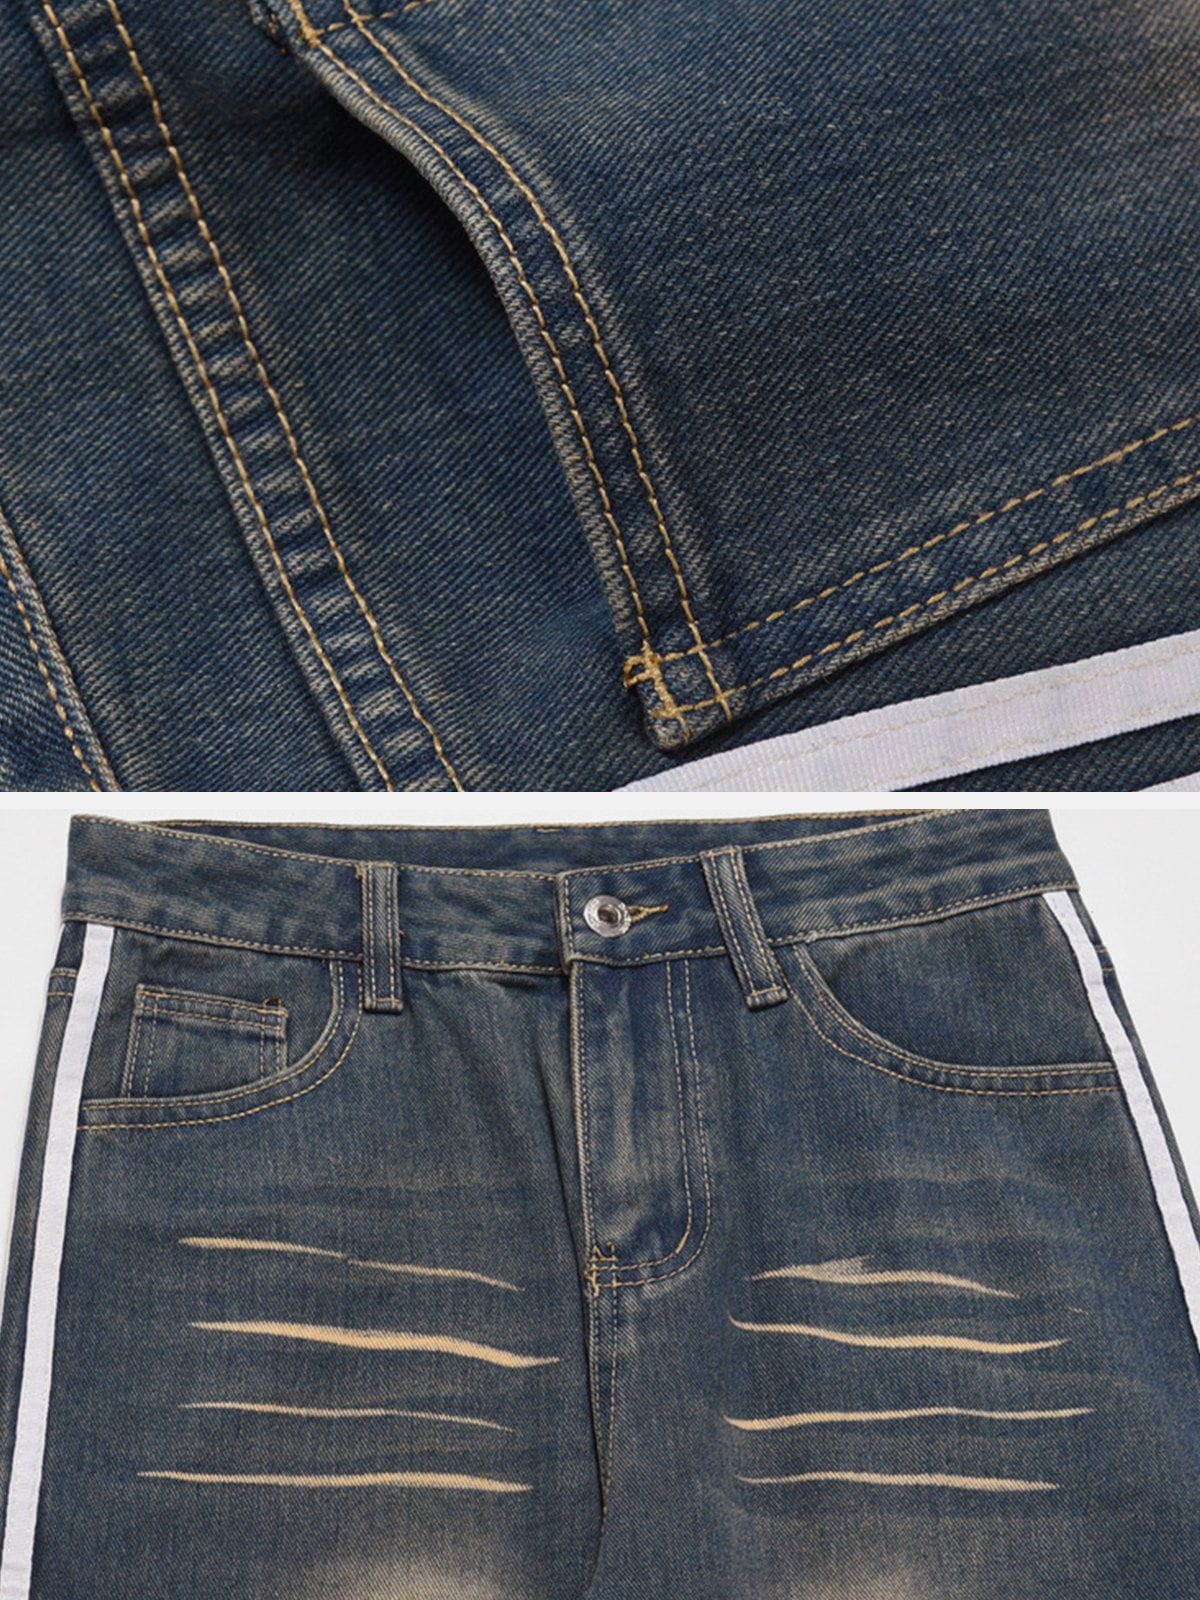 Eprezzy® - Stripe Washed Jeans Streetwear Fashion - eprezzy.com